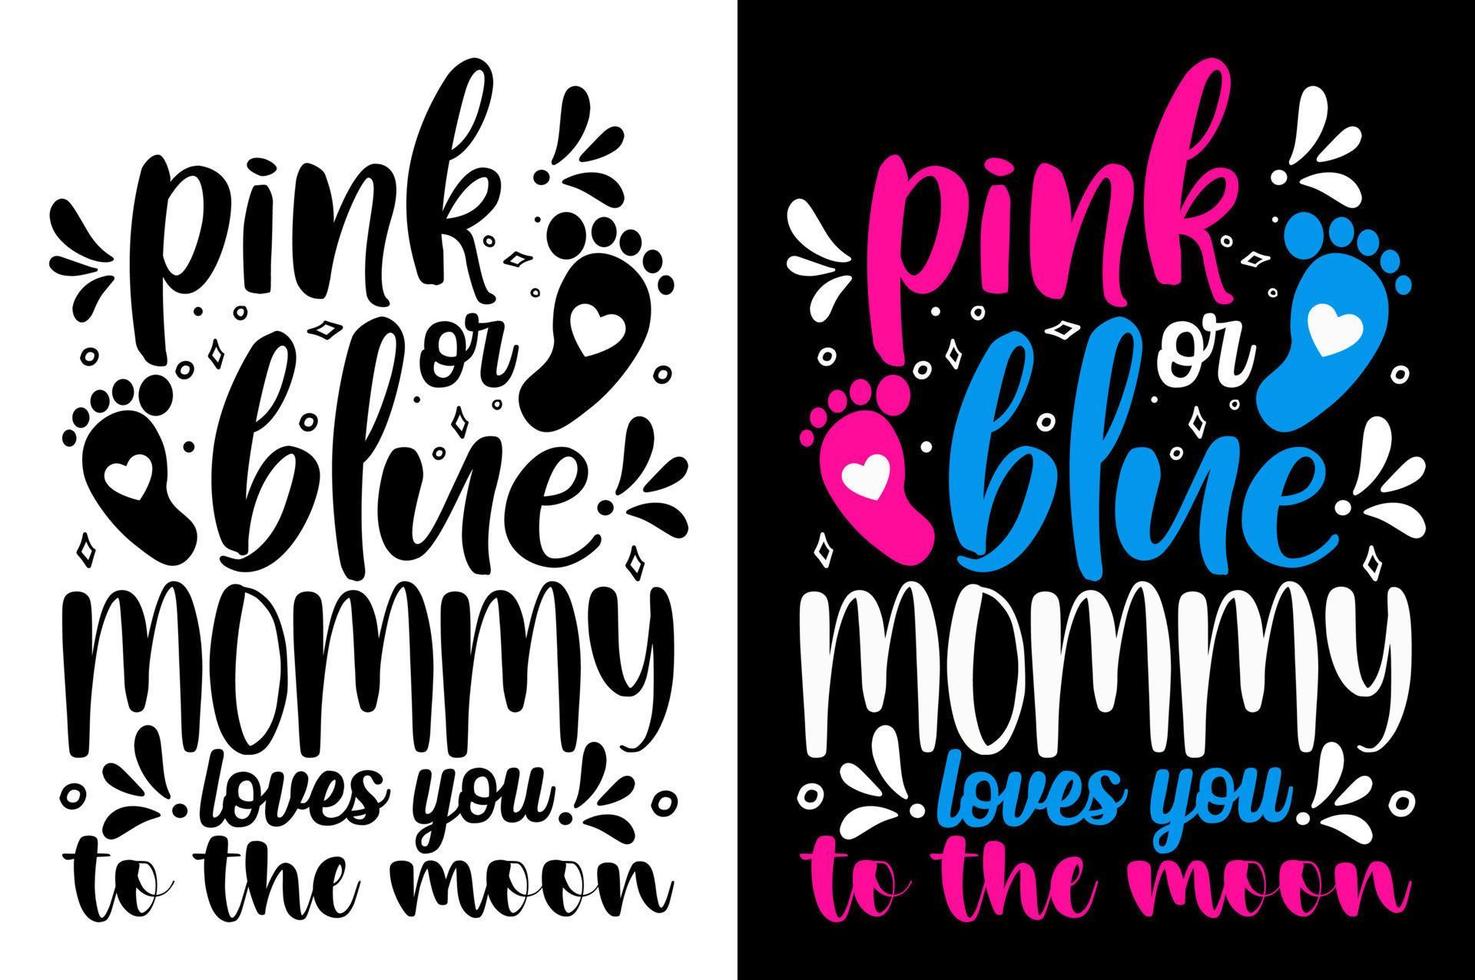 rose ou bleu maman aime vous t chemise le sexe révéler bébé T-shirt inspirant citations typographie caractères conception vecteur